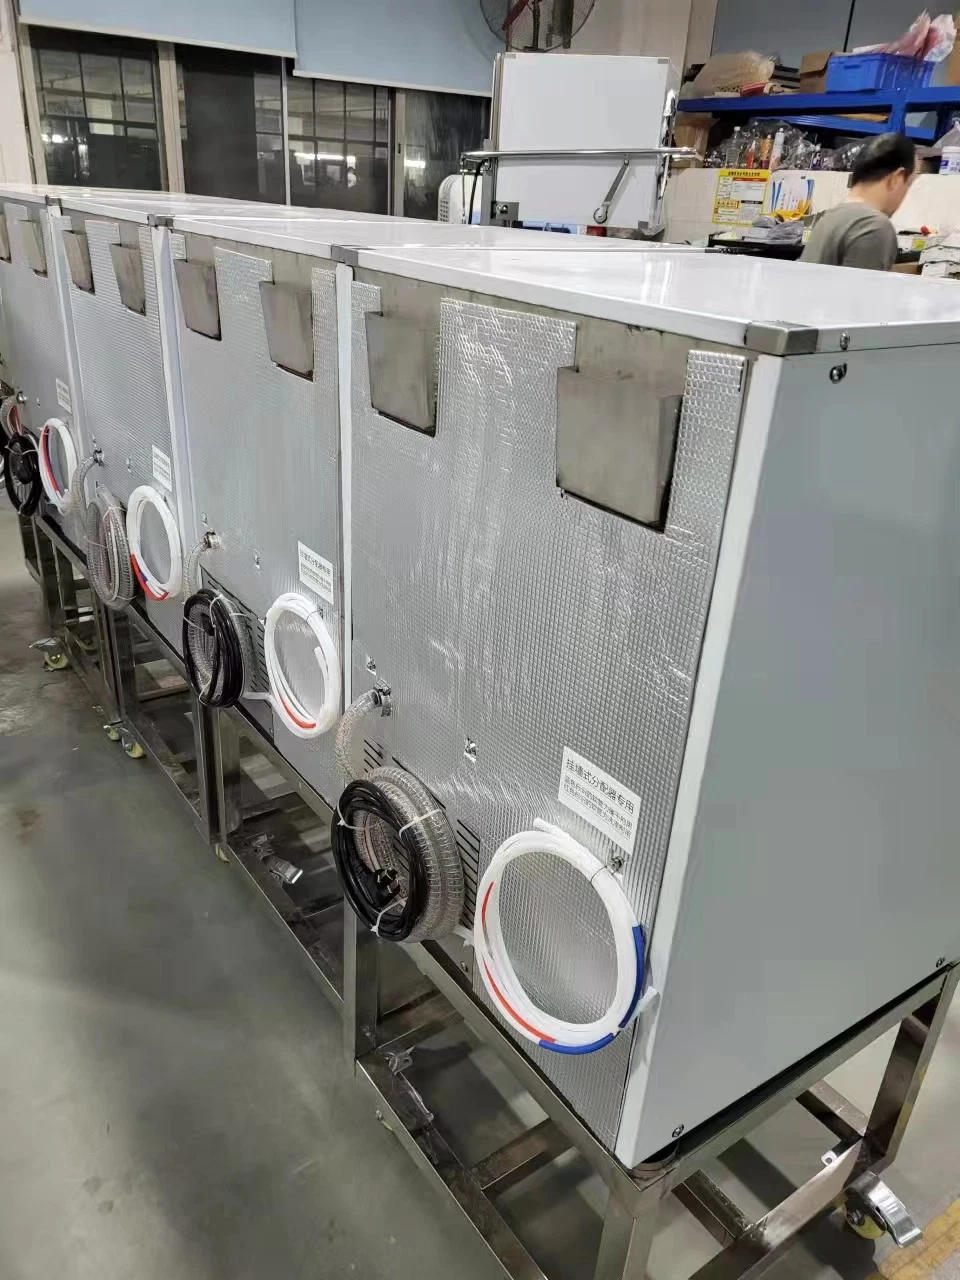 Venta caliente máquina automática de lavavajillas lavavajillas bajo encimera vidrio Lavadora